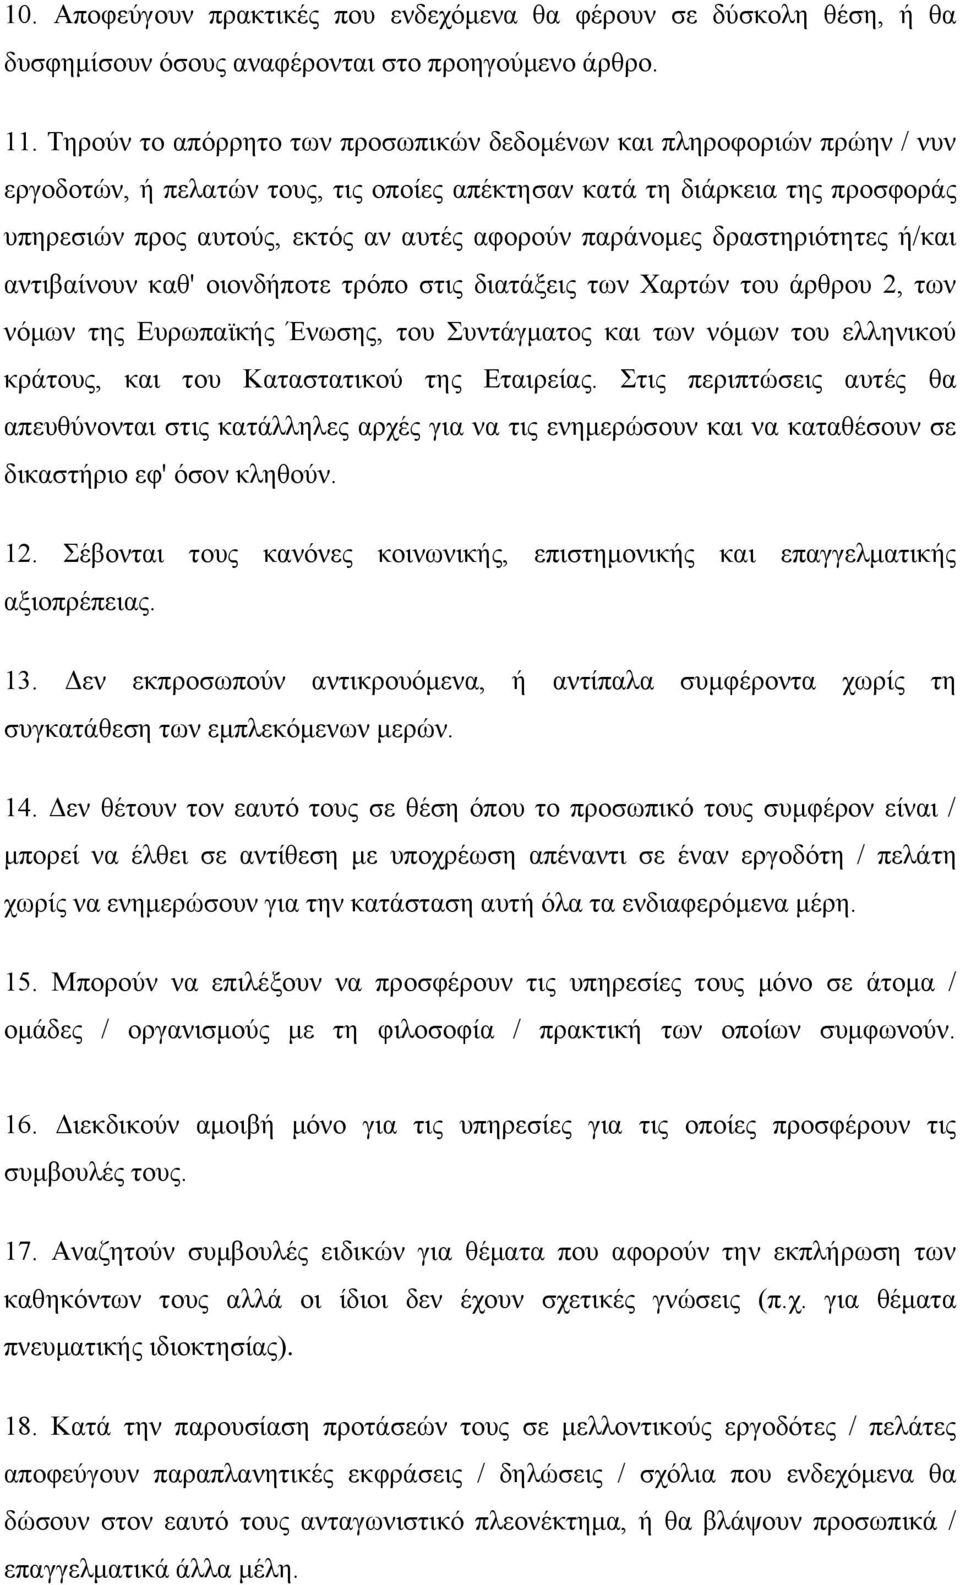 παράνομες δραστηριότητες ή/και αντιβαίνουν καθ' οιονδήποτε τρόπο στις διατάξεις των Χαρτών του άρθρου 2, των νόμων της Ευρωπαϊκής Ένωσης, του Συντάγματος και των νόμων του ελληνικού κράτους, και του